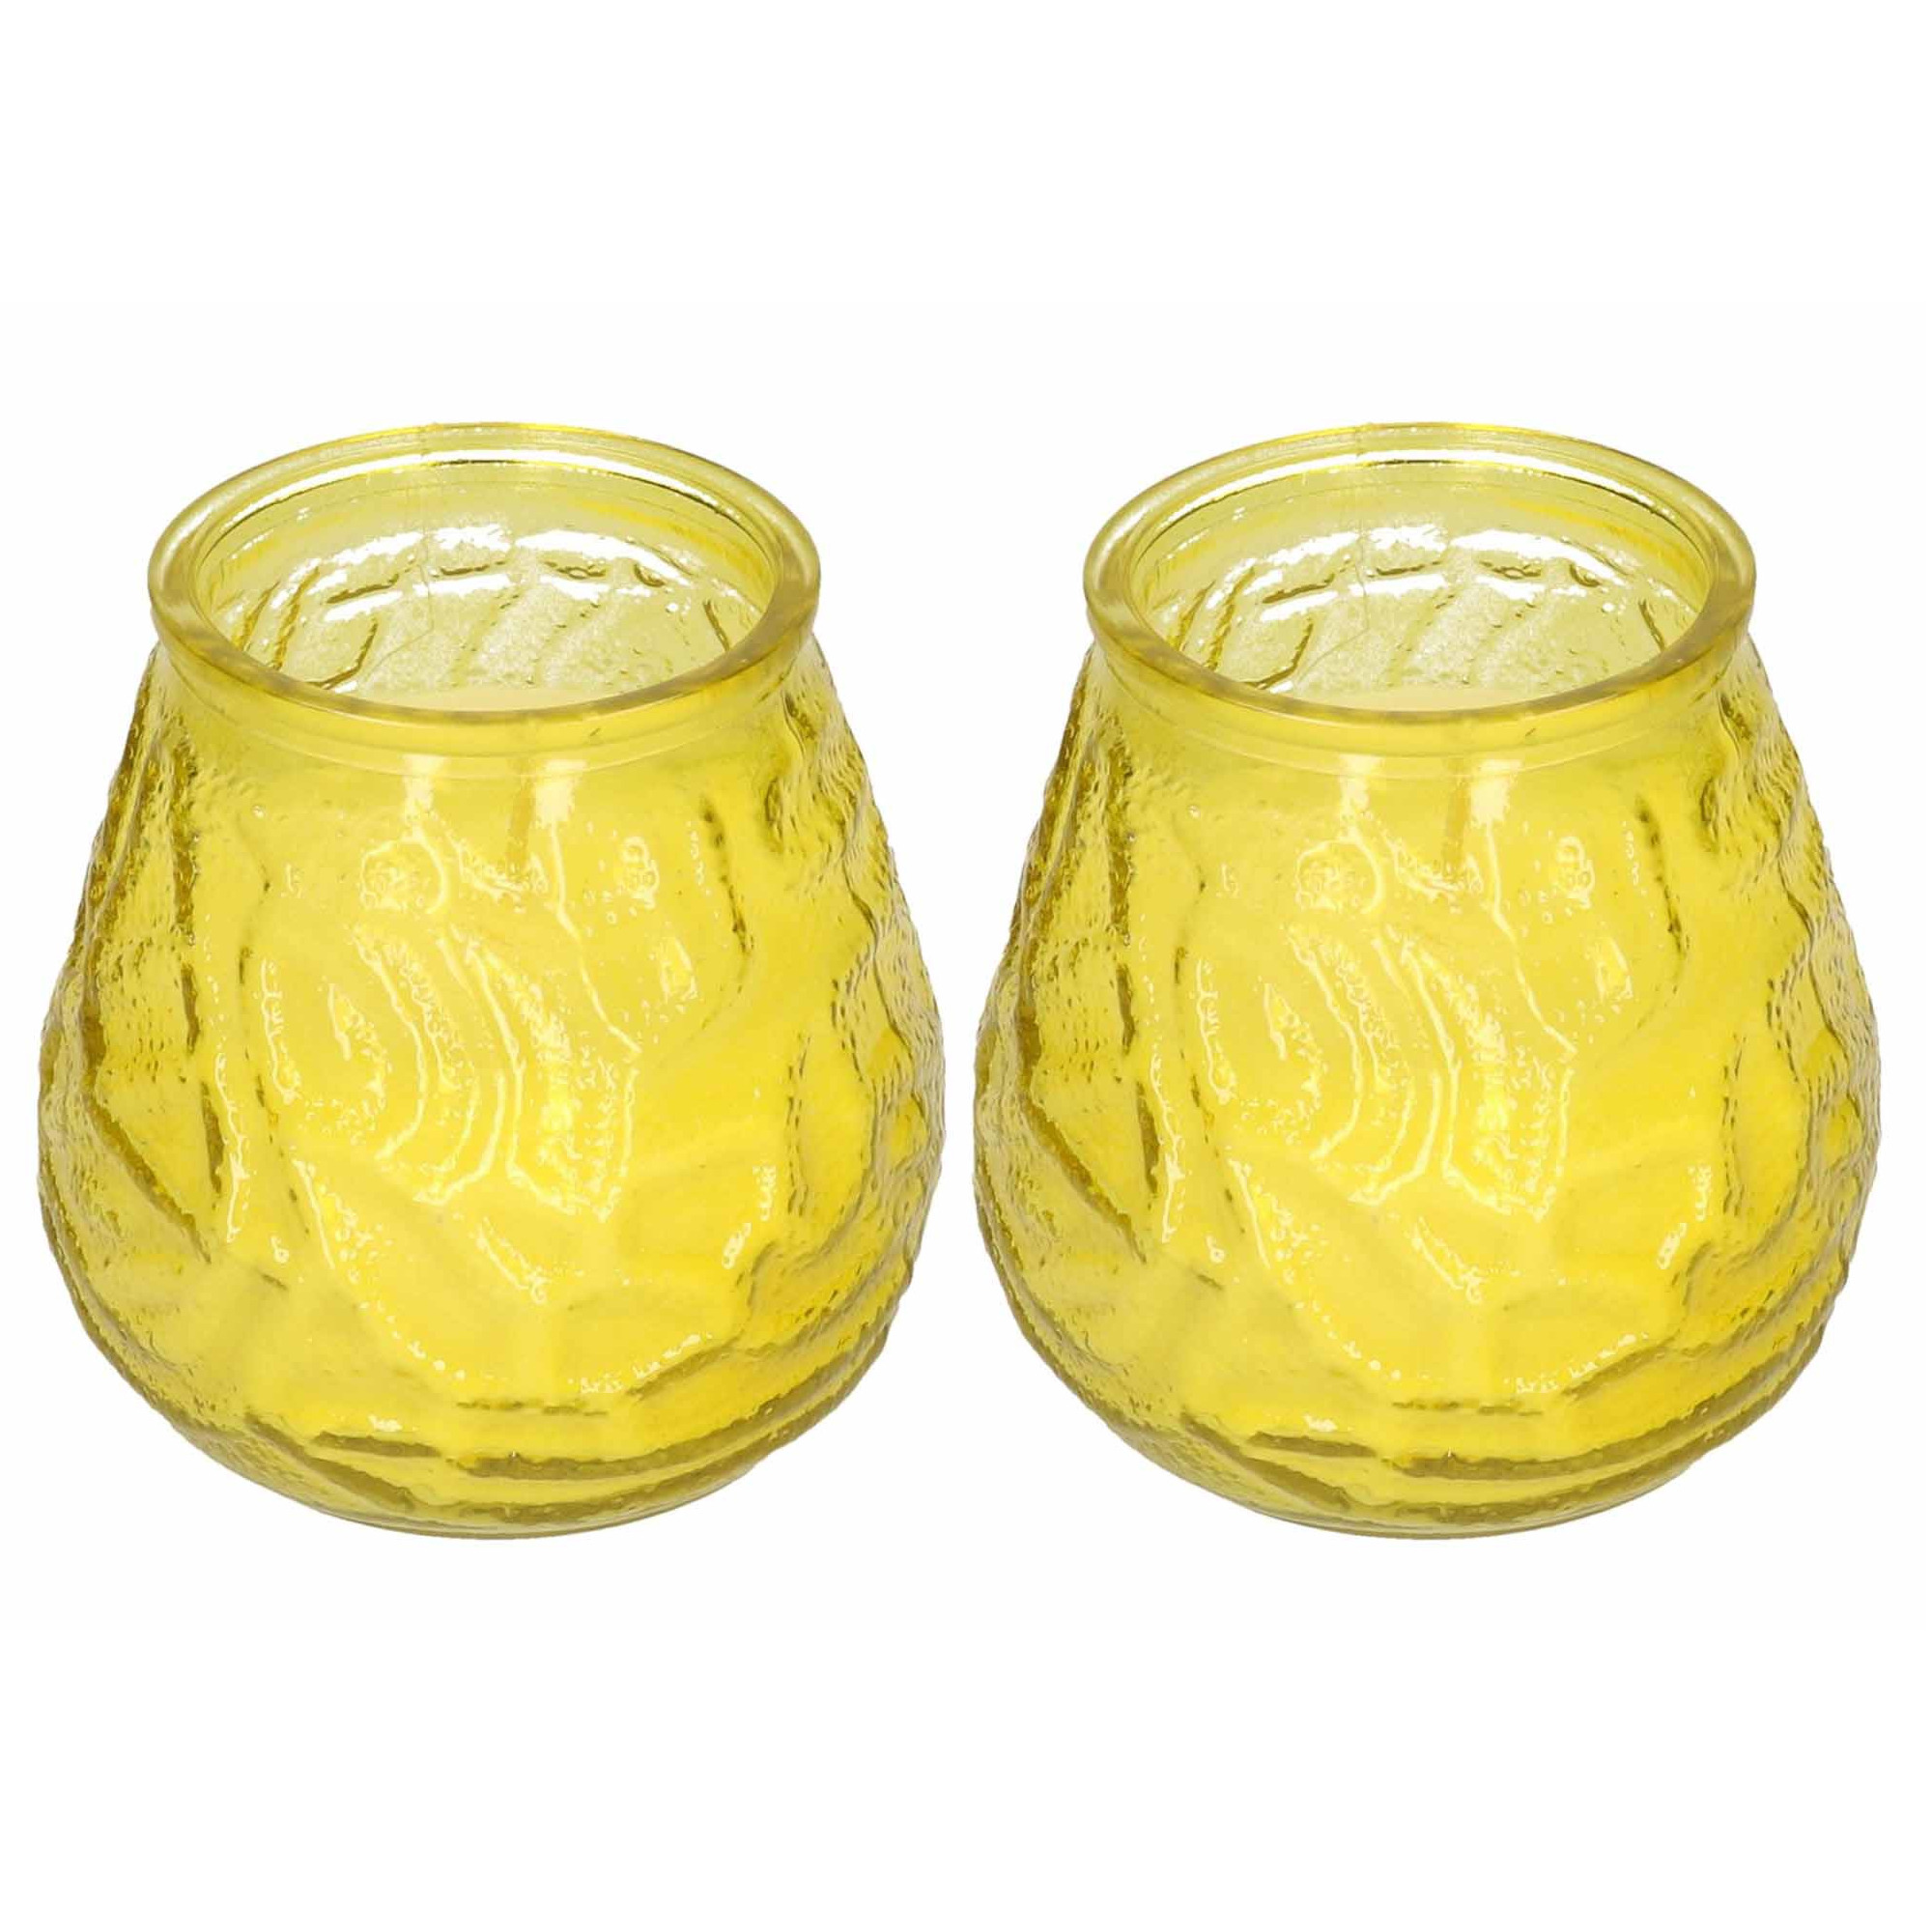 Windlicht geurkaars - 2x - geel glas - 48 branduren - citrusgeur